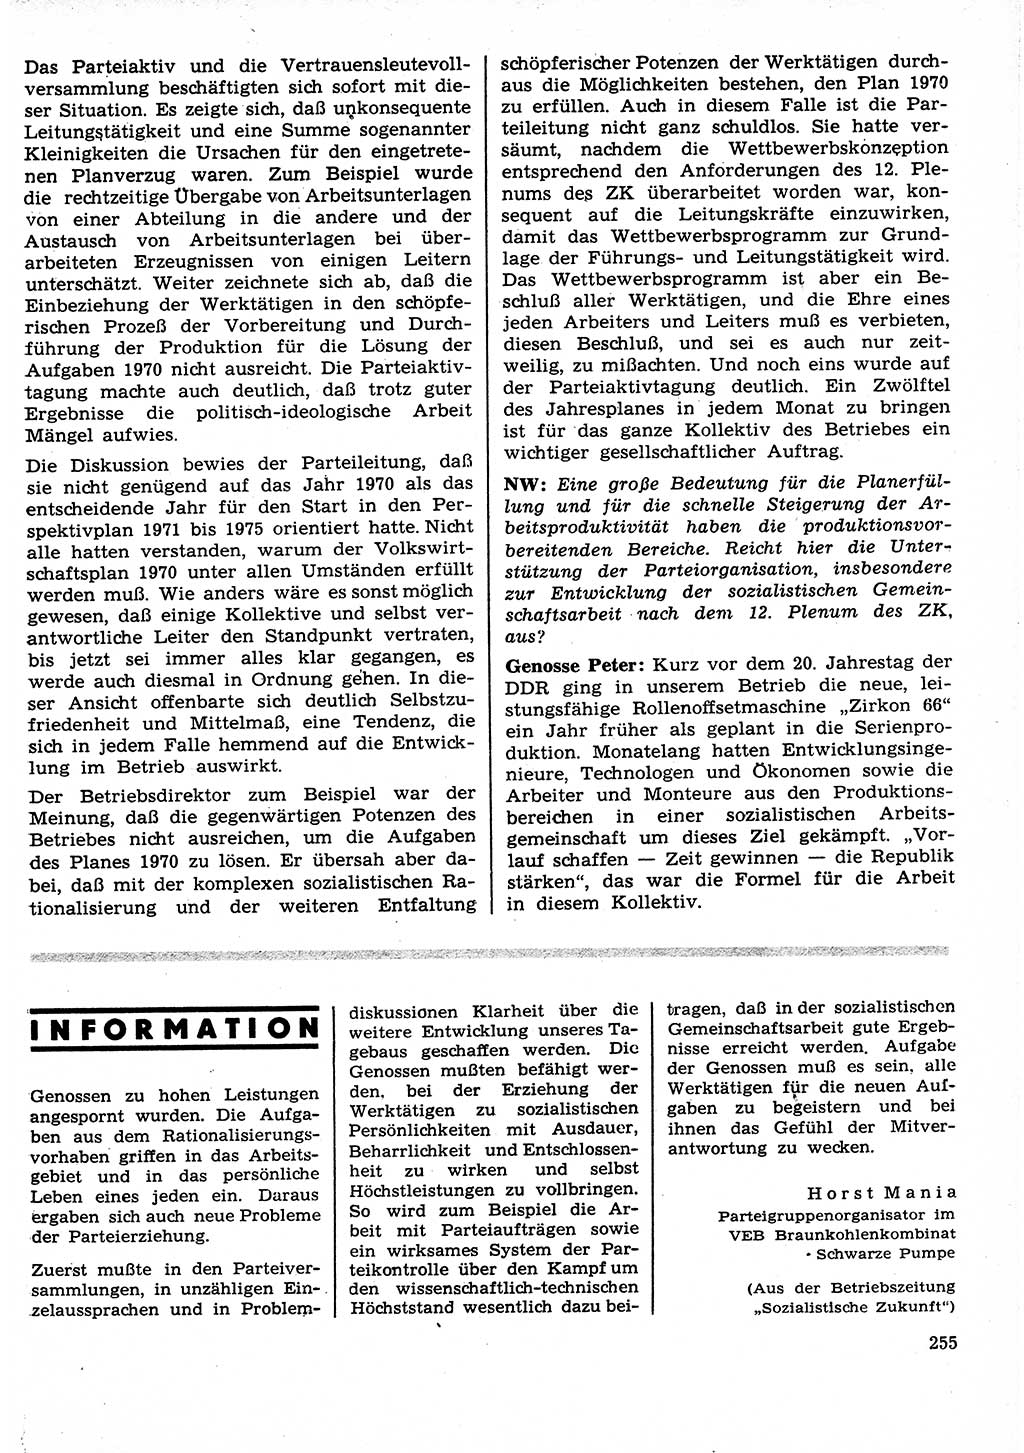 Neuer Weg (NW), Organ des Zentralkomitees (ZK) der SED (Sozialistische Einheitspartei Deutschlands) für Fragen des Parteilebens, 25. Jahrgang [Deutsche Demokratische Republik (DDR)] 1970, Seite 255 (NW ZK SED DDR 1970, S. 255)